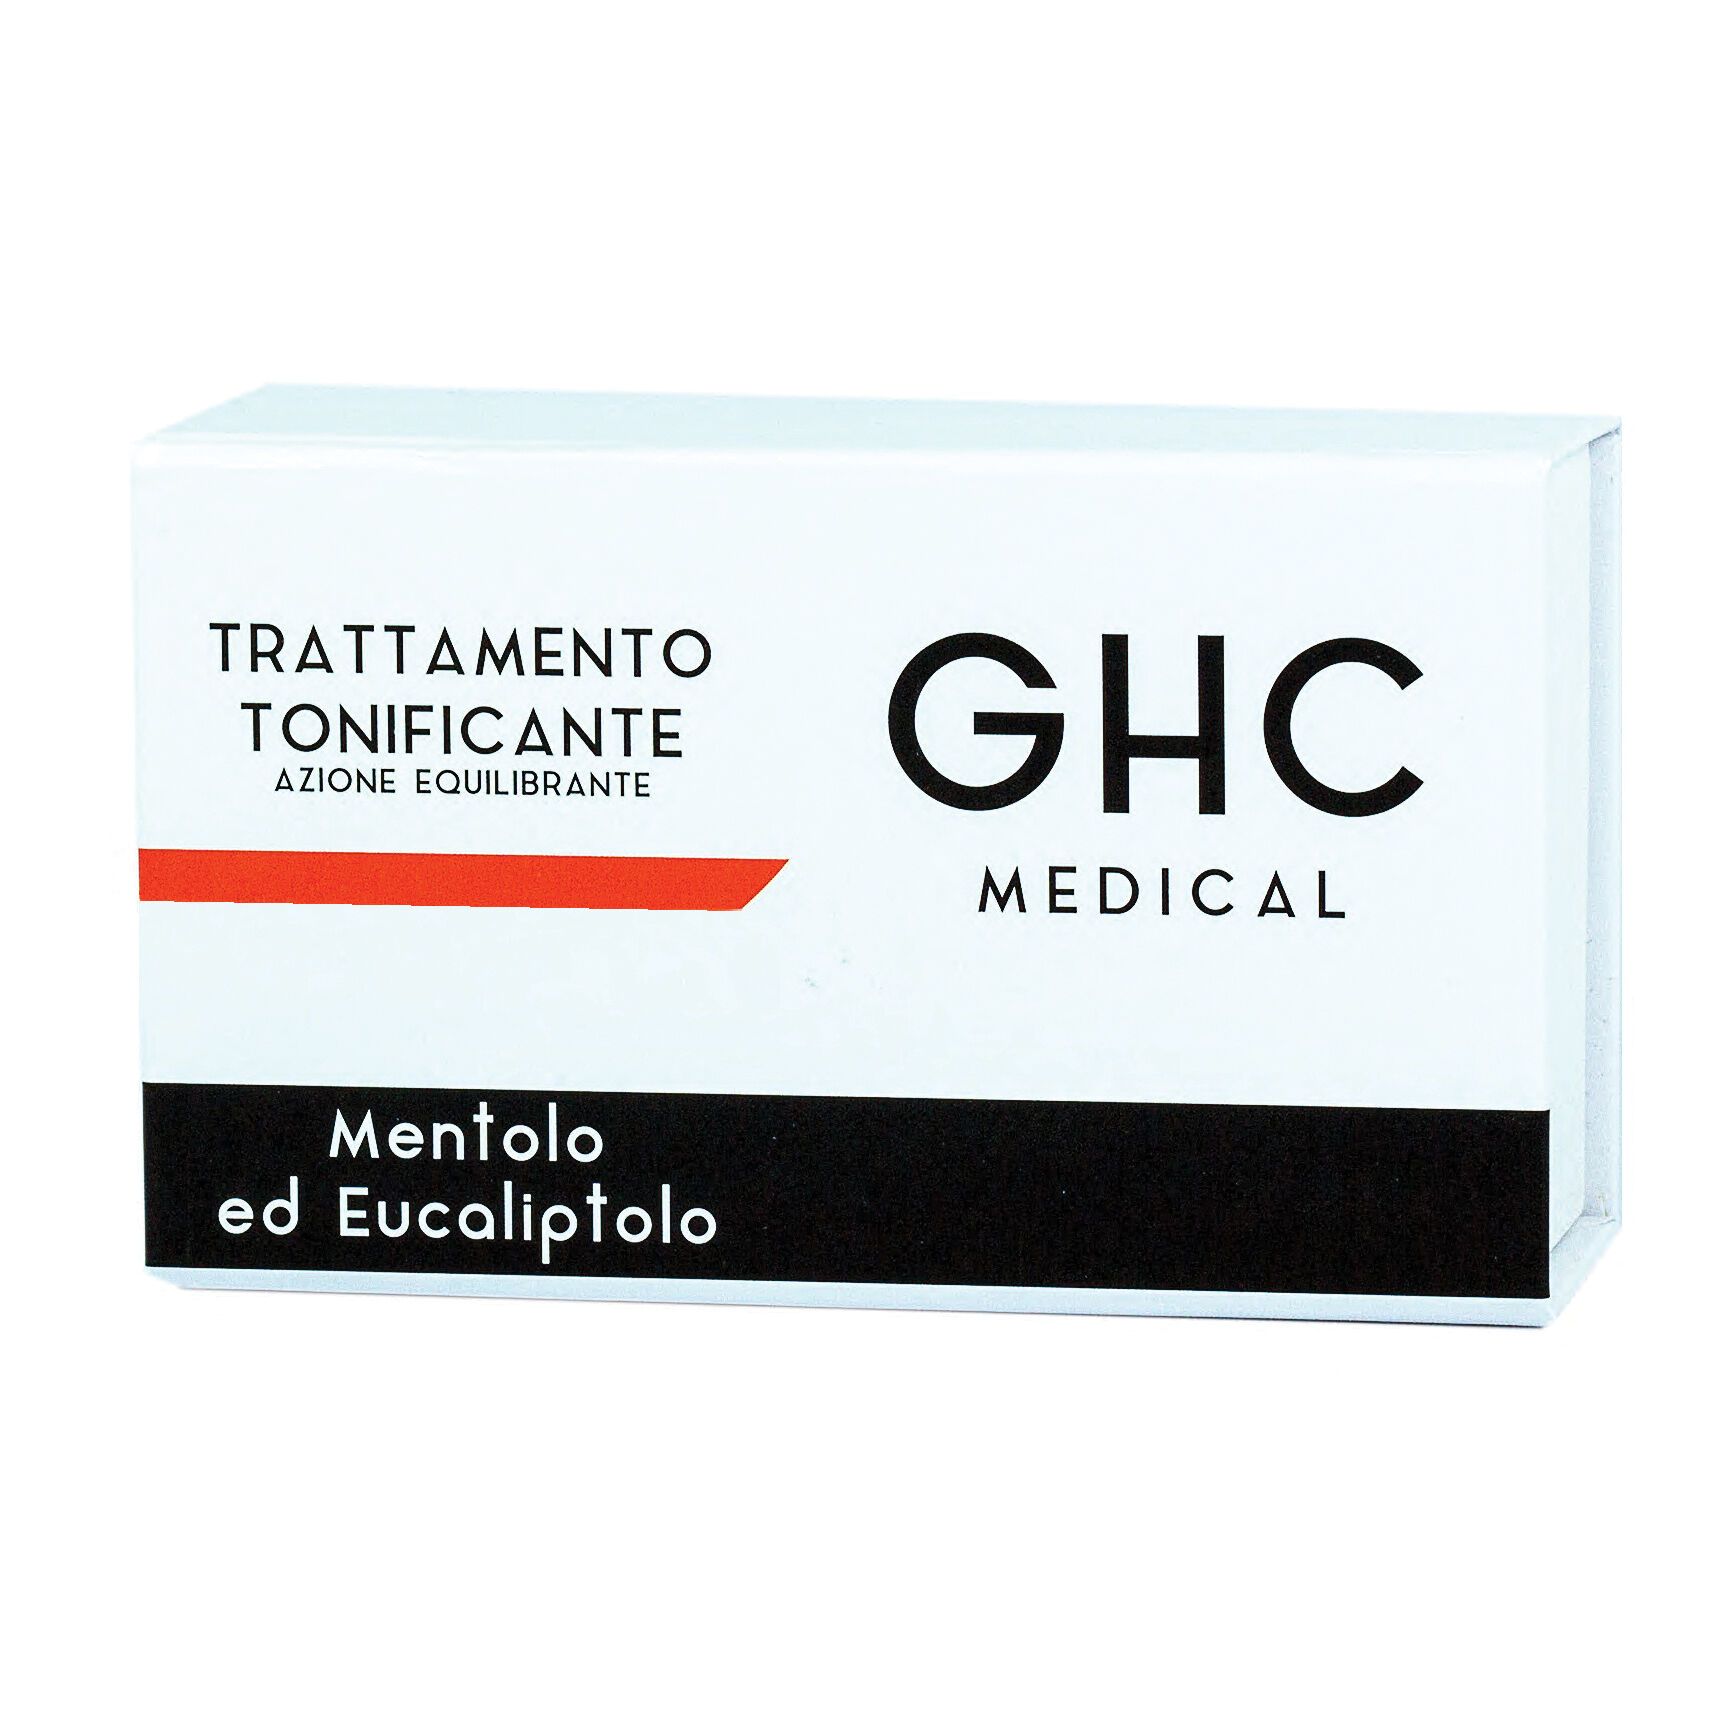 ghc medical trattamento tonificante 10 fiale da 10 ml